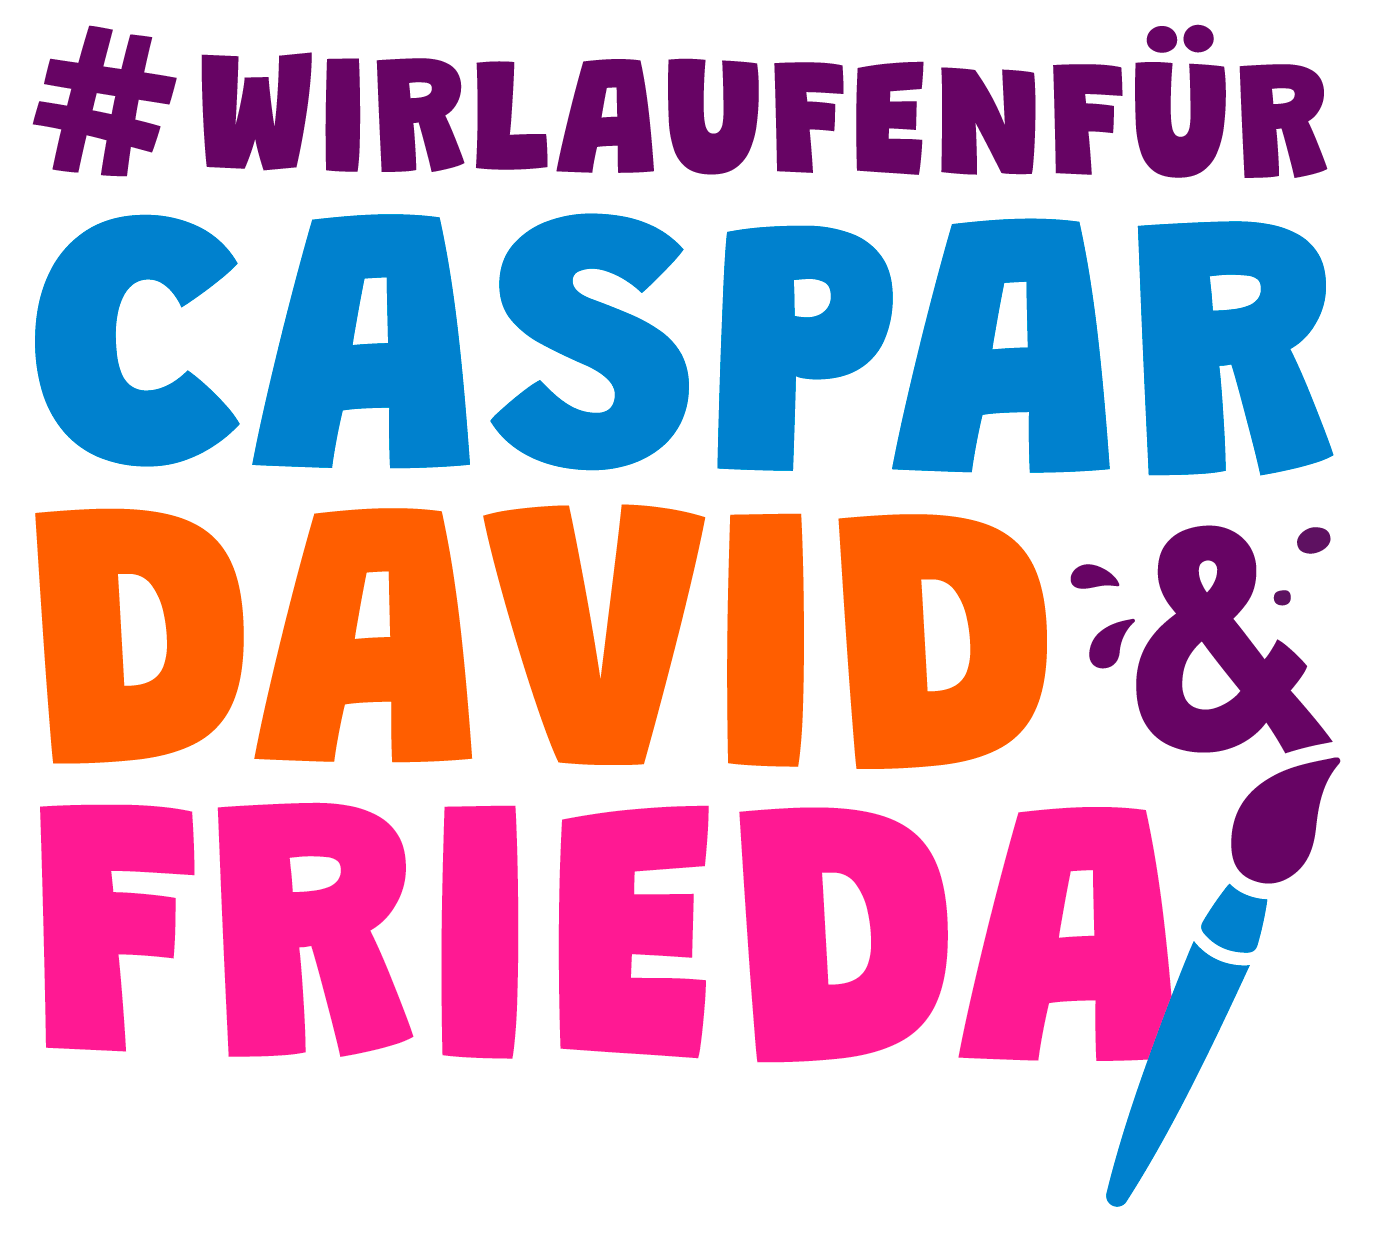 #WIRLAUFEN FÜR CASPAR DAVID & FRIEDA